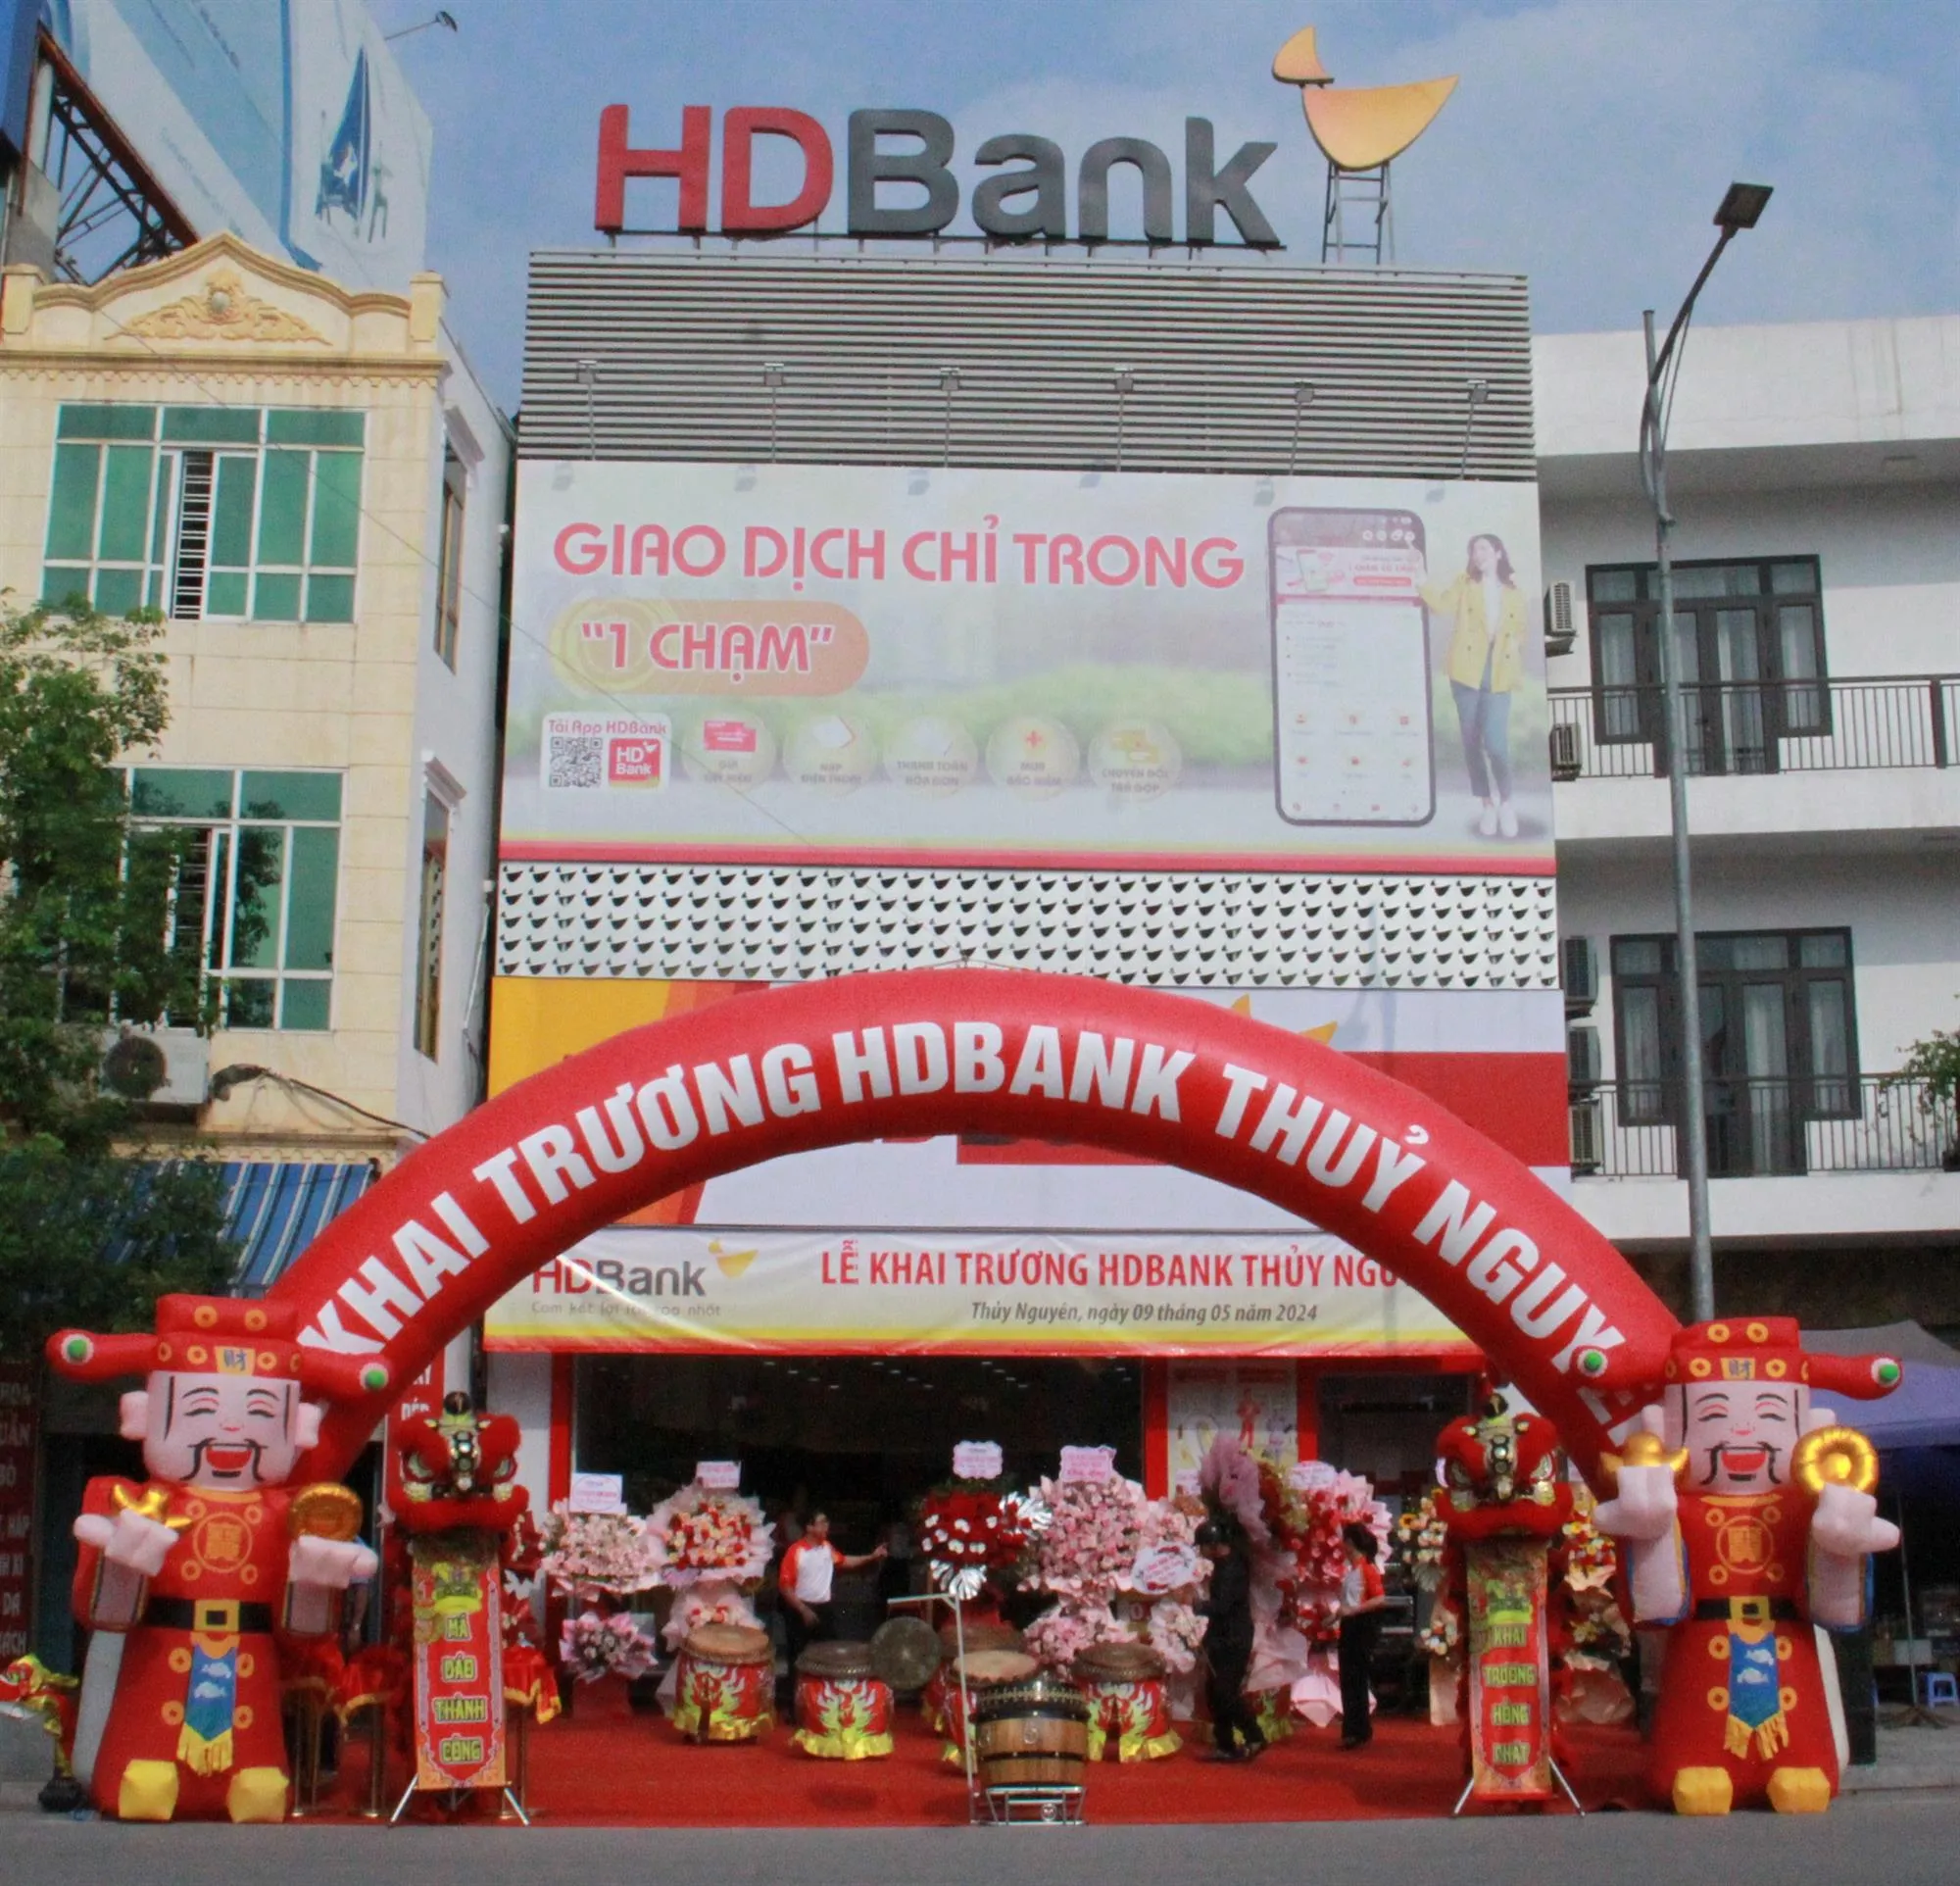 Mở thêm chi nhánh HDBank tại Thủy Nguyên, góp động lực cùng mục tiêu lớn của Hải Phòng